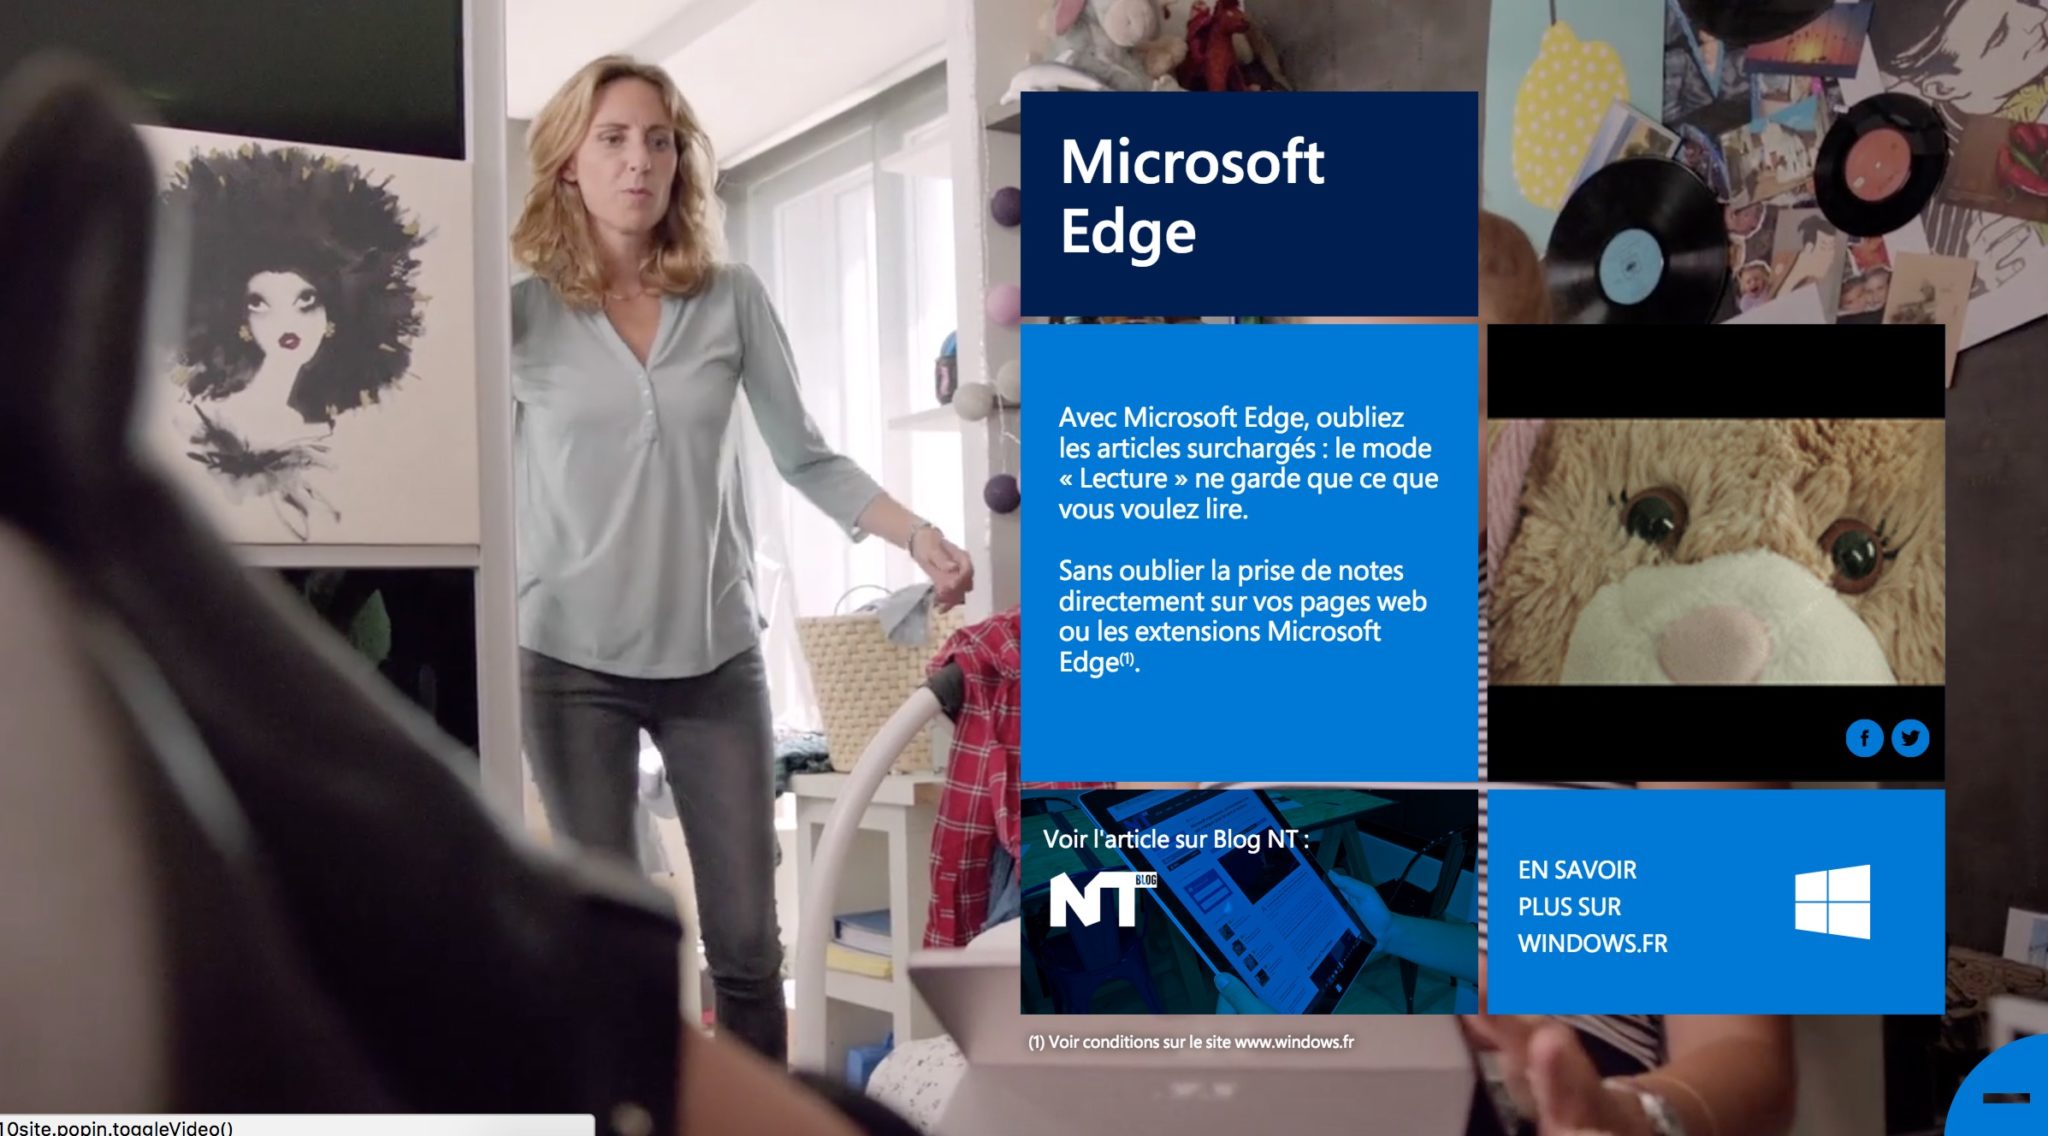 Windows Vous focus sur Microsoft Edge